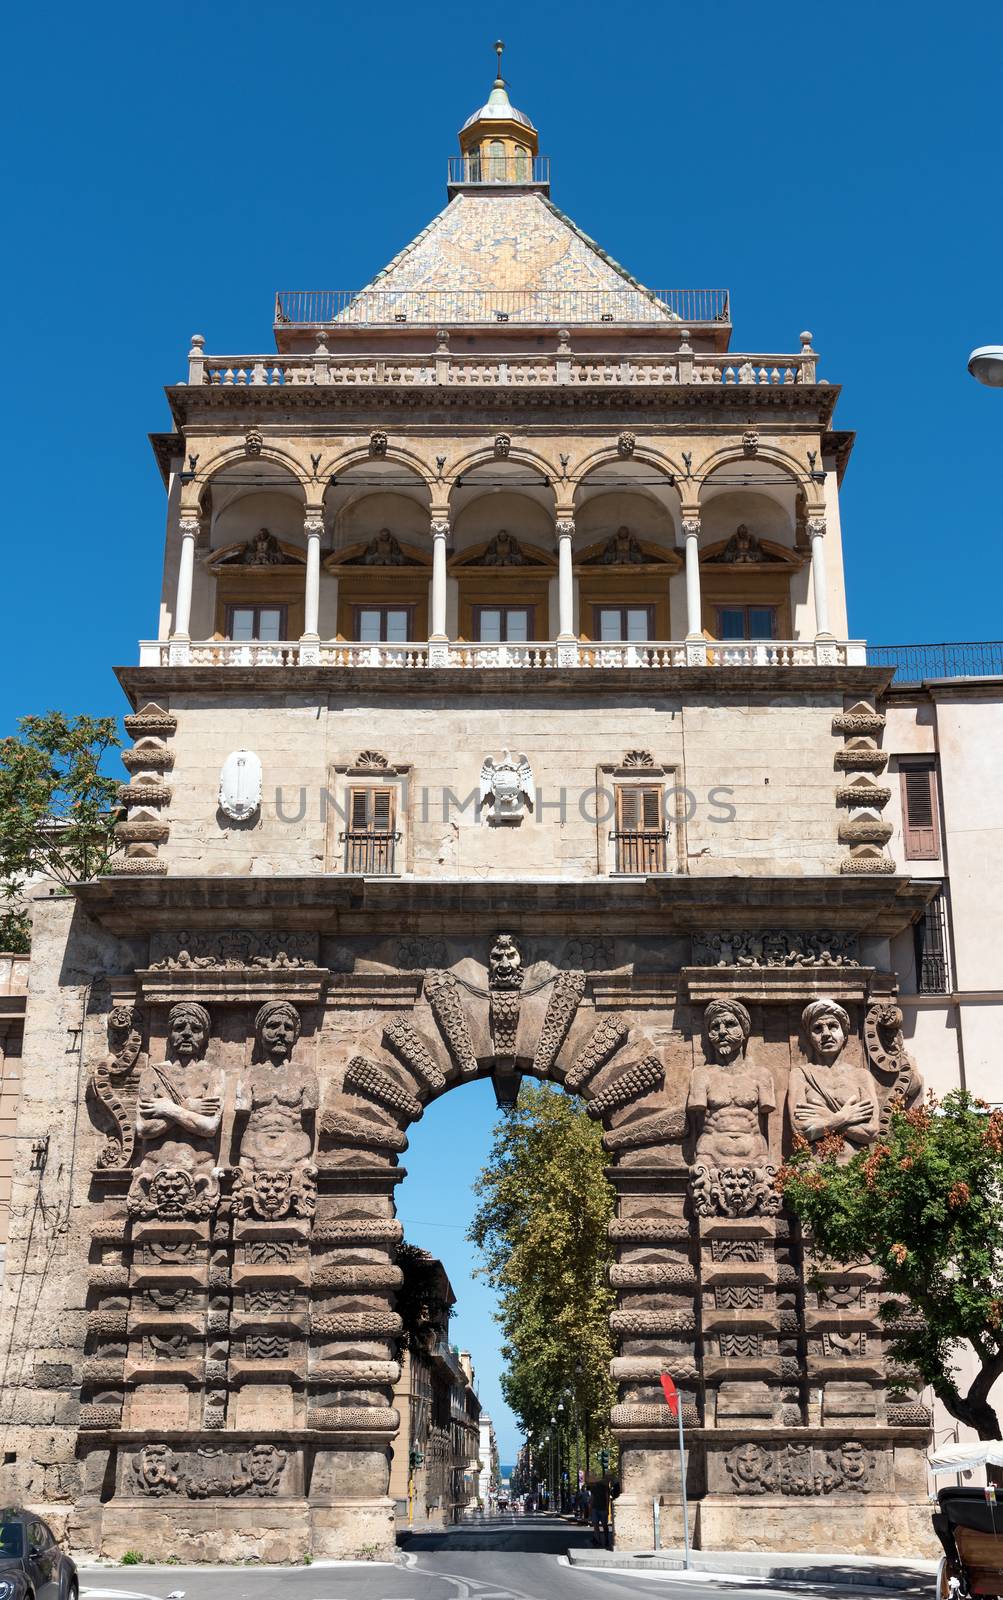 The historic Porta Nuova in Palermo, Sicily